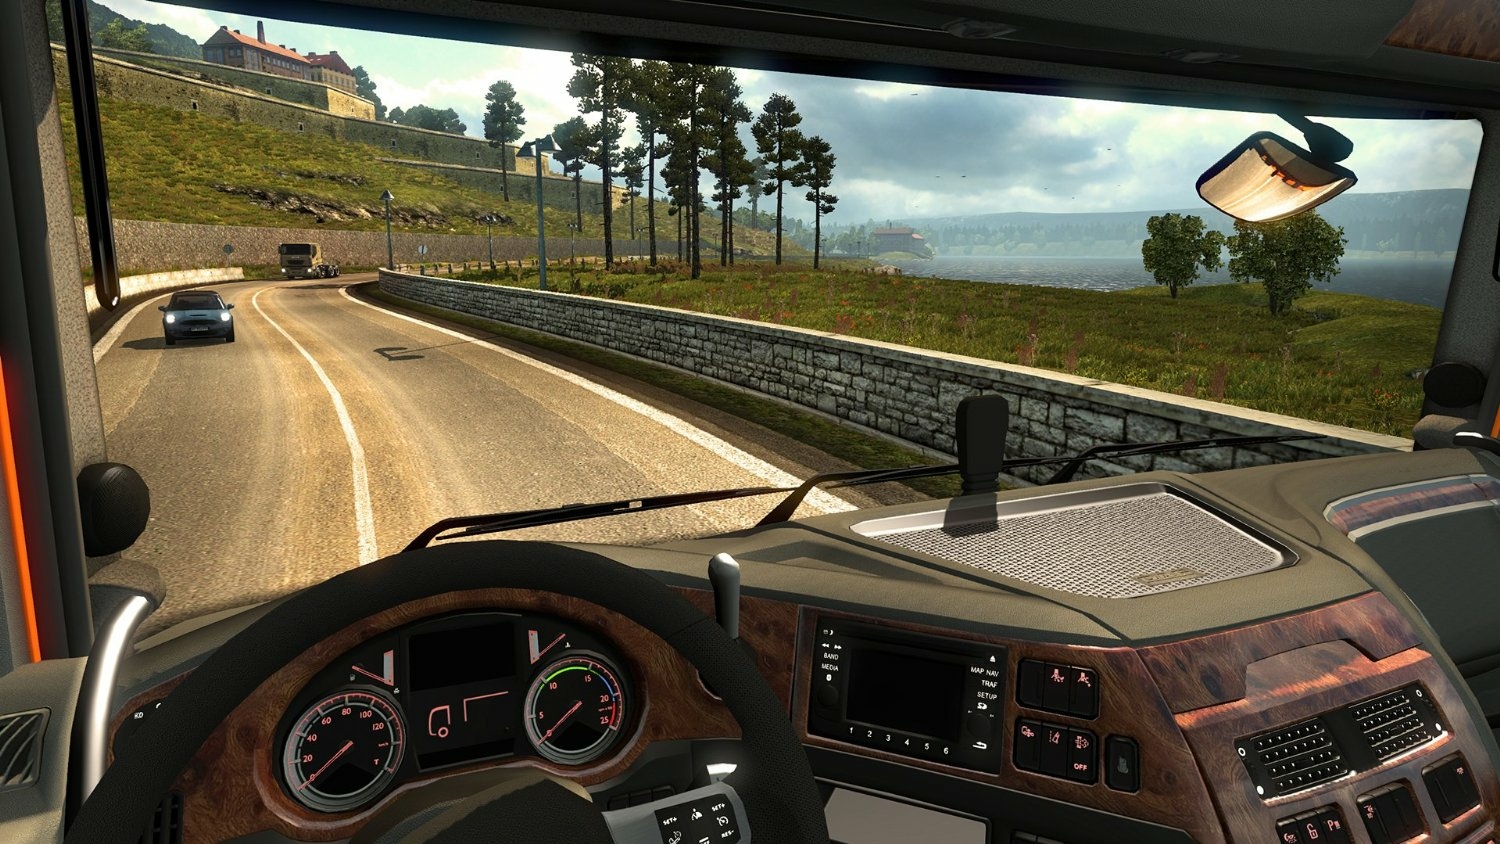 euro truck simulator 2 1.34.0.17 product key